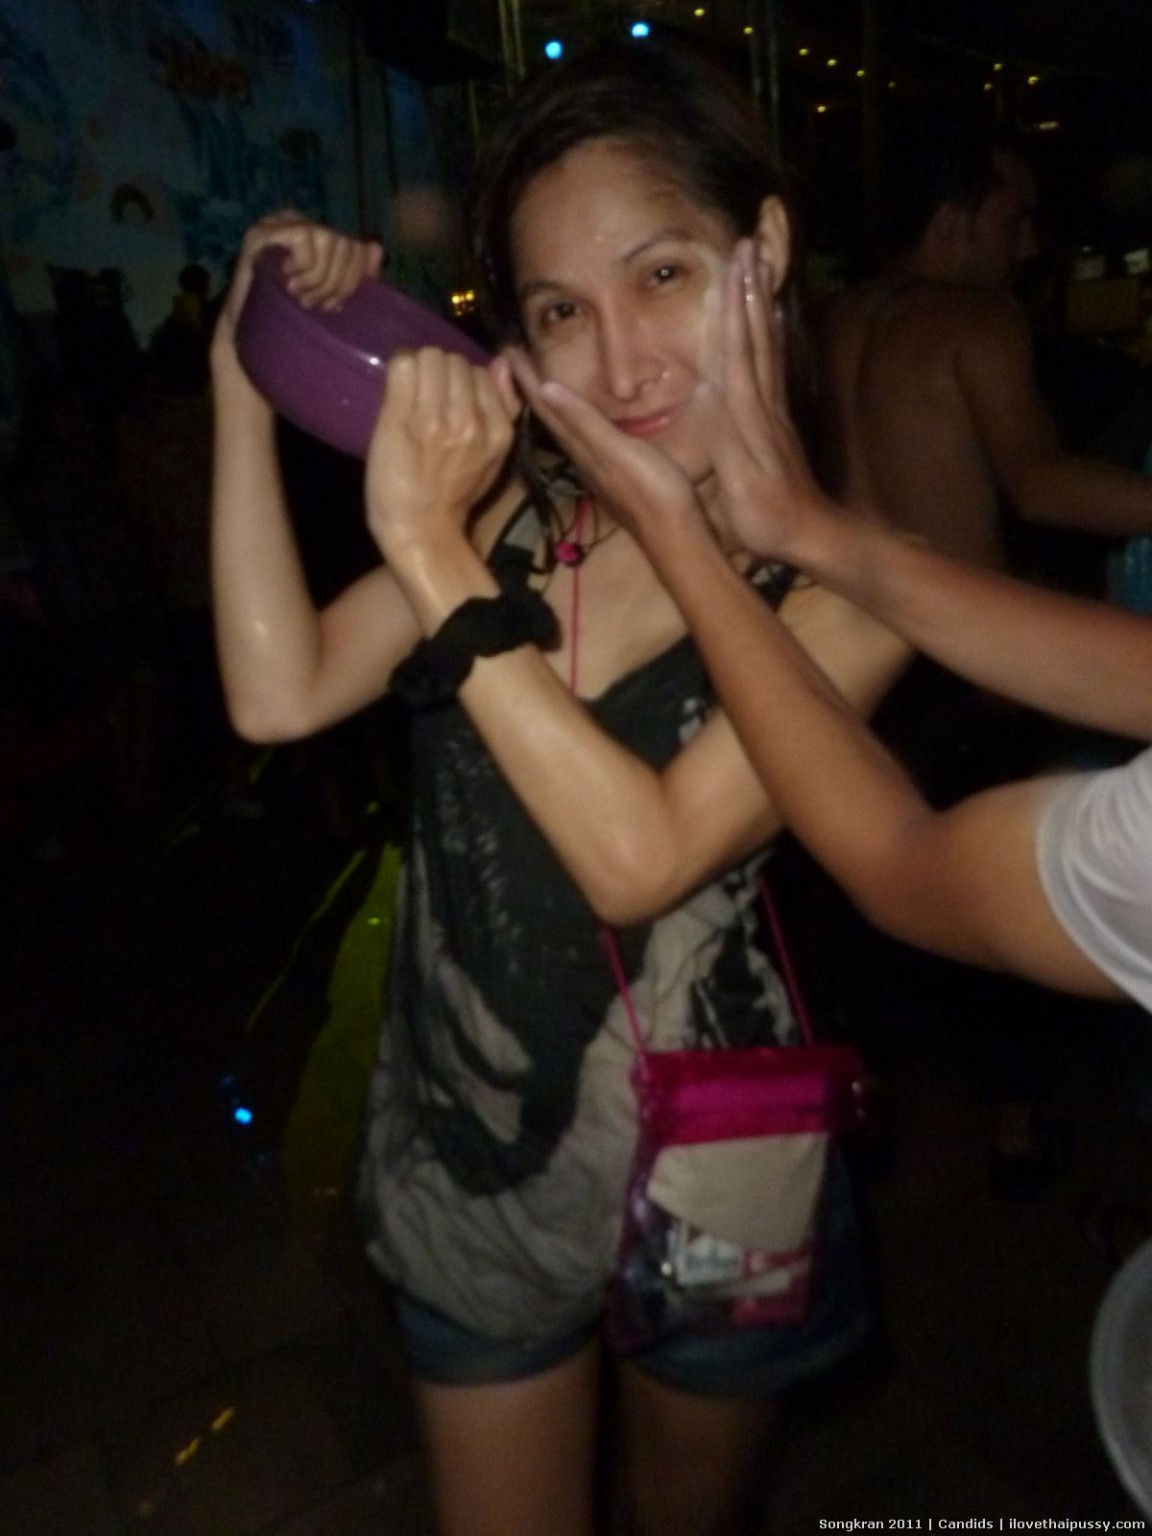 Dolce puttana giovane tailandese ama scopare senza preservativo sesso rischioso con turisti figa asiatica
 #68101508